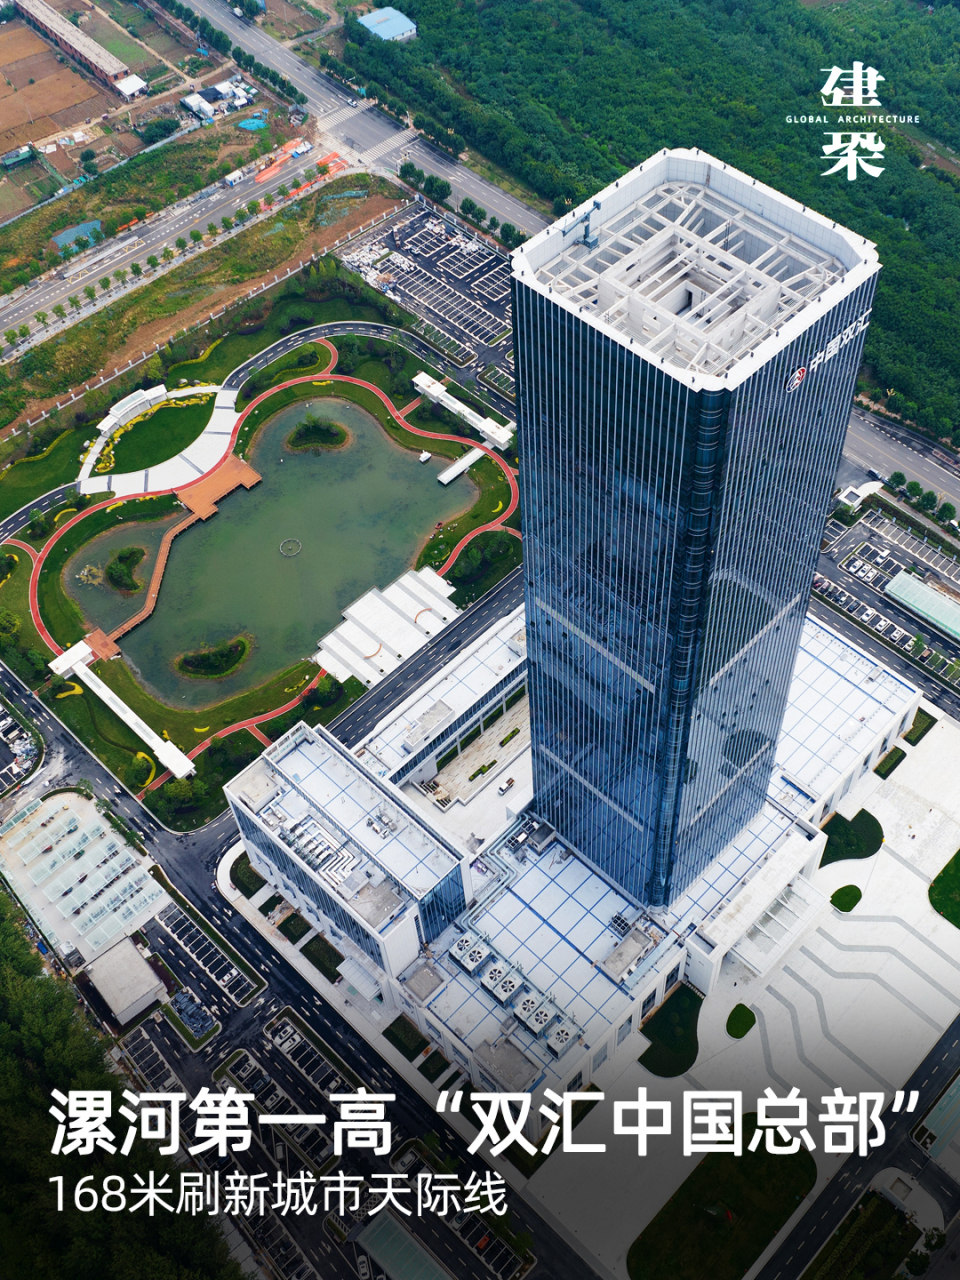 河南漯河市第一高楼——中国双汇新总部建成!项目总建筑面积约11